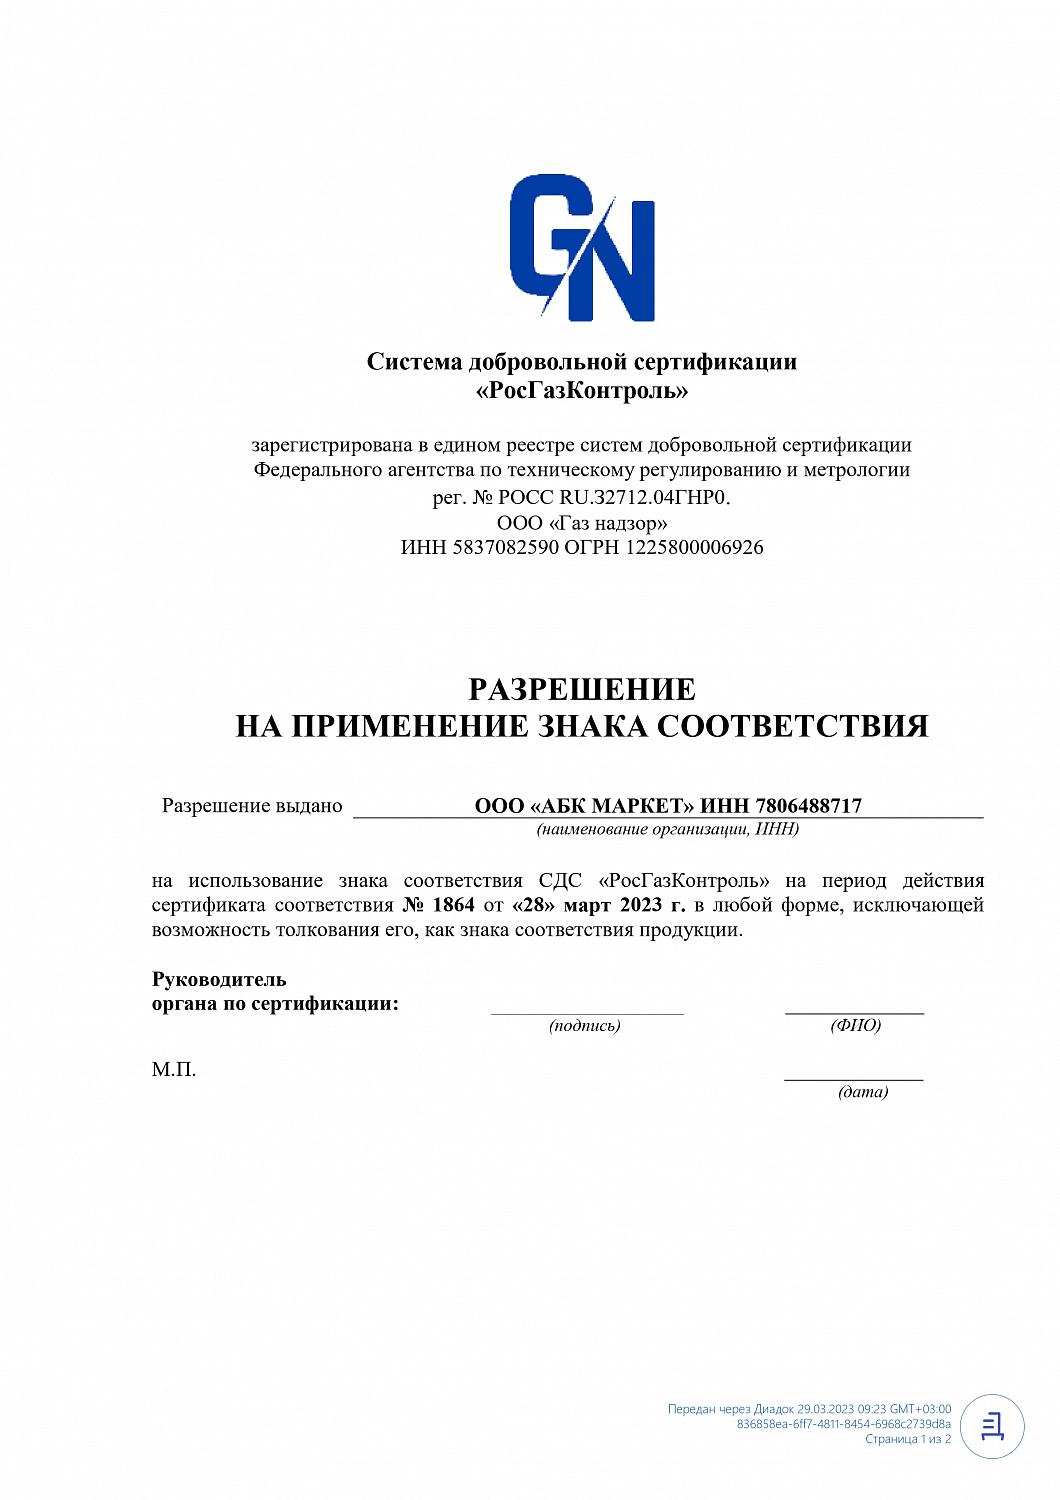 Аккумуляторная Балтийская Компания  получила сертификат соответствия "РосГазКонтроль"